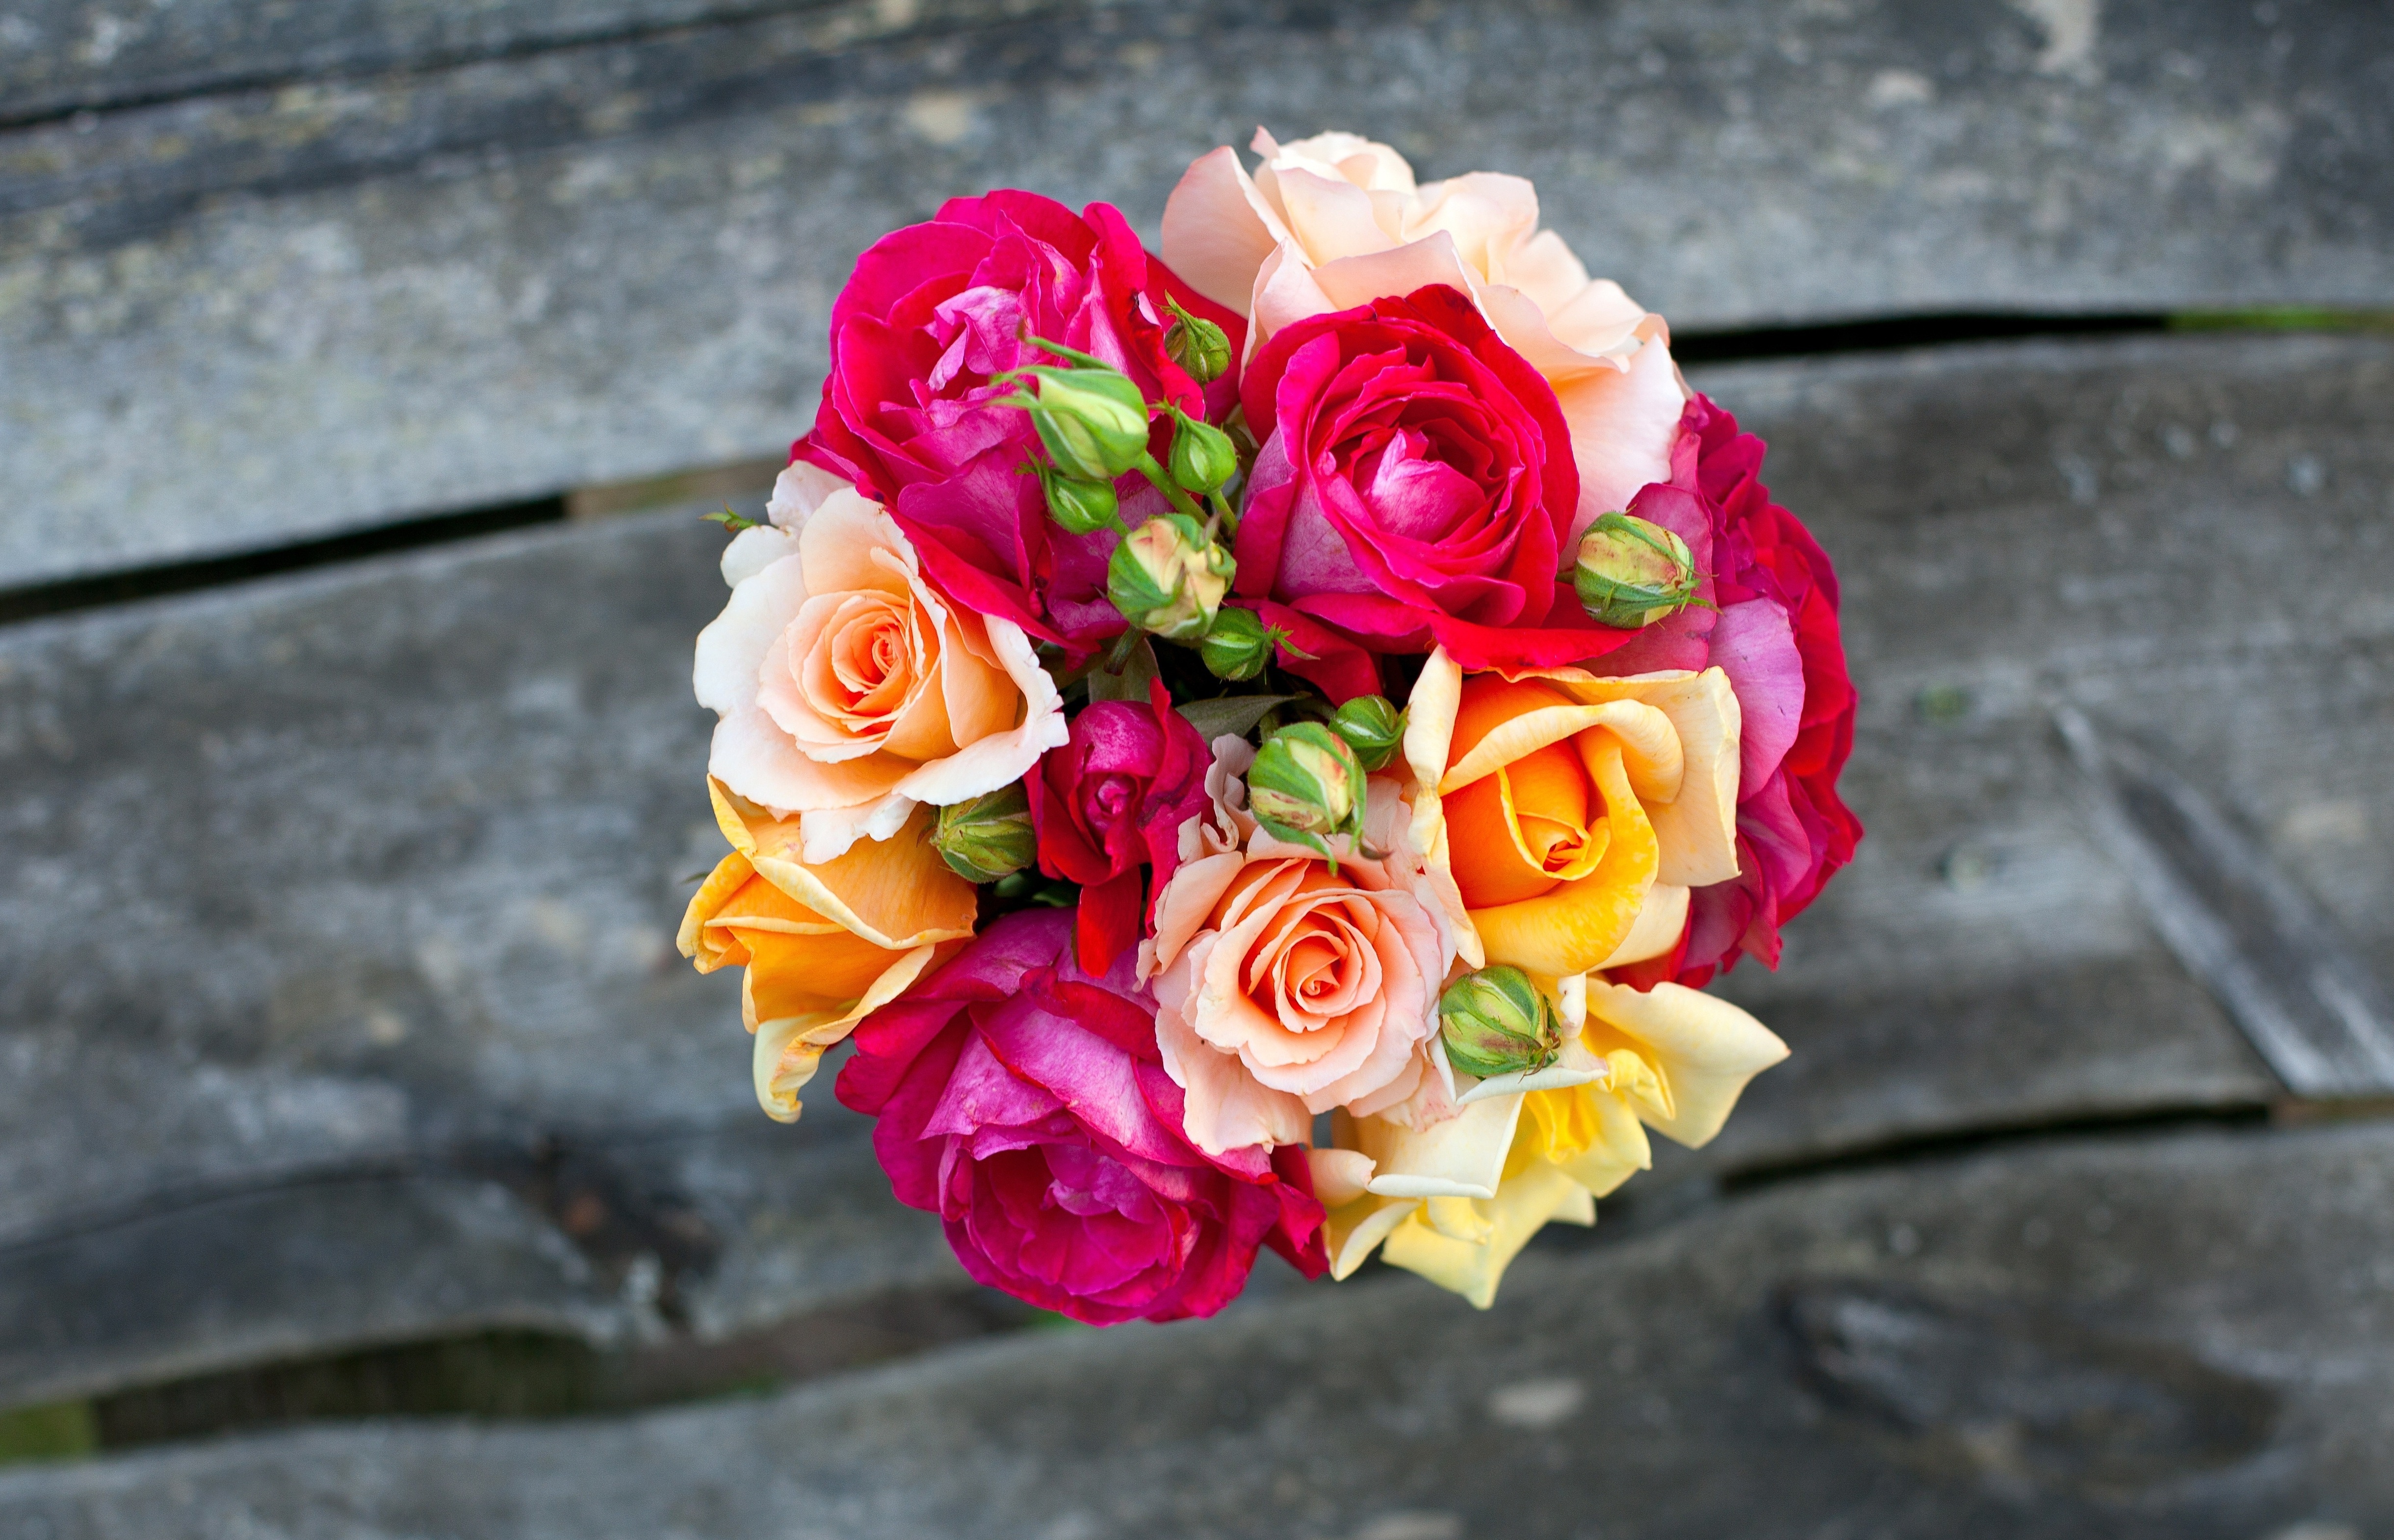 Фото букета на телефон. Яркий букет. Букет роз. Красивый букет цветов. Разноцветный букет.